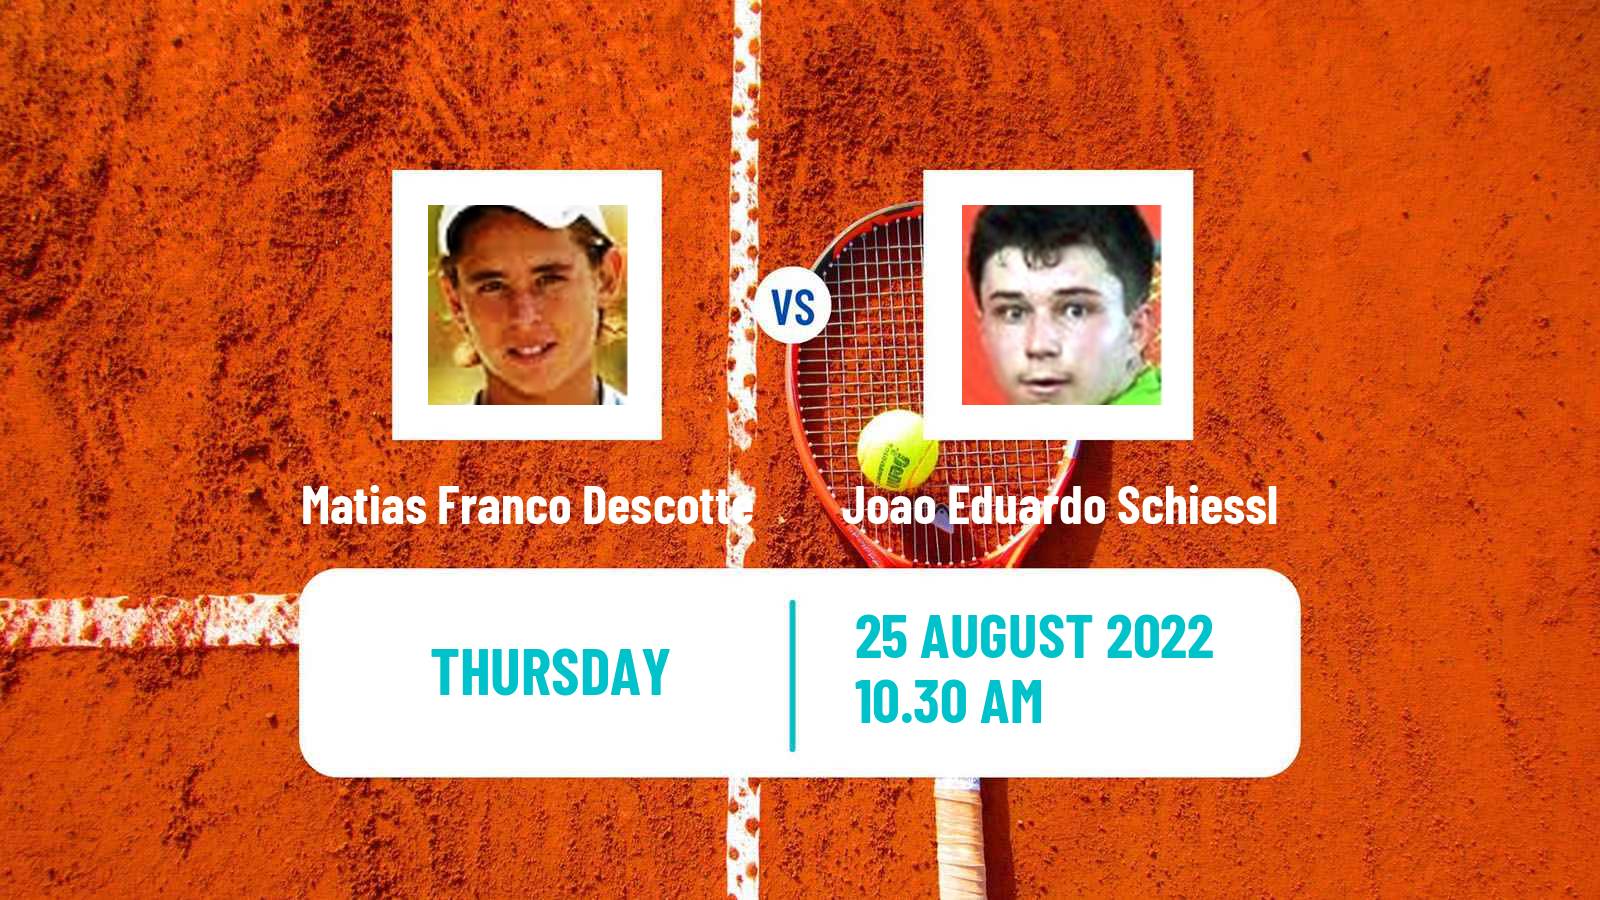 Tennis ITF Tournaments Matias Franco Descotte - Joao Eduardo Schiessl